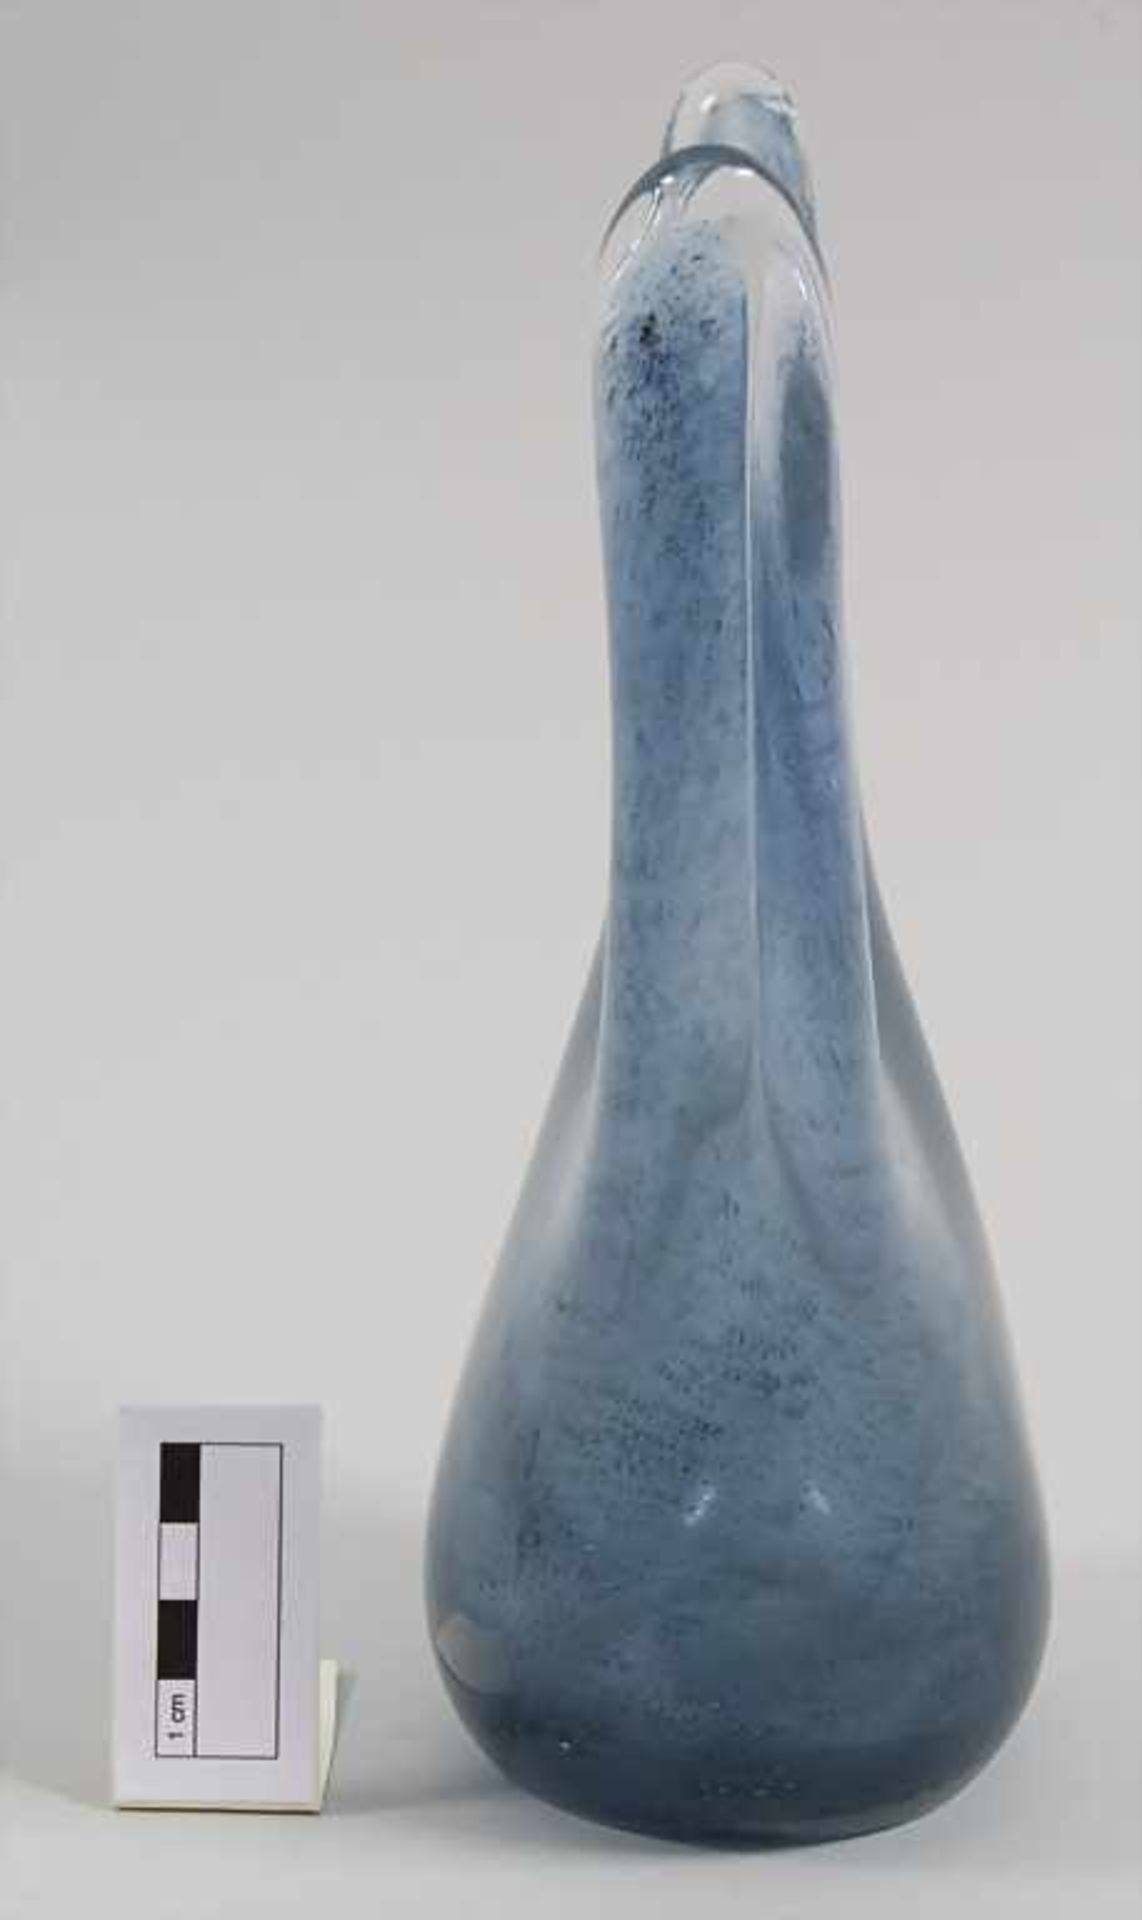 Glasziervase 'Cobalto' / A decorative vase 'Cobalto', Barovier & Toso, Entw. Ercole Barovier, - Image 2 of 7